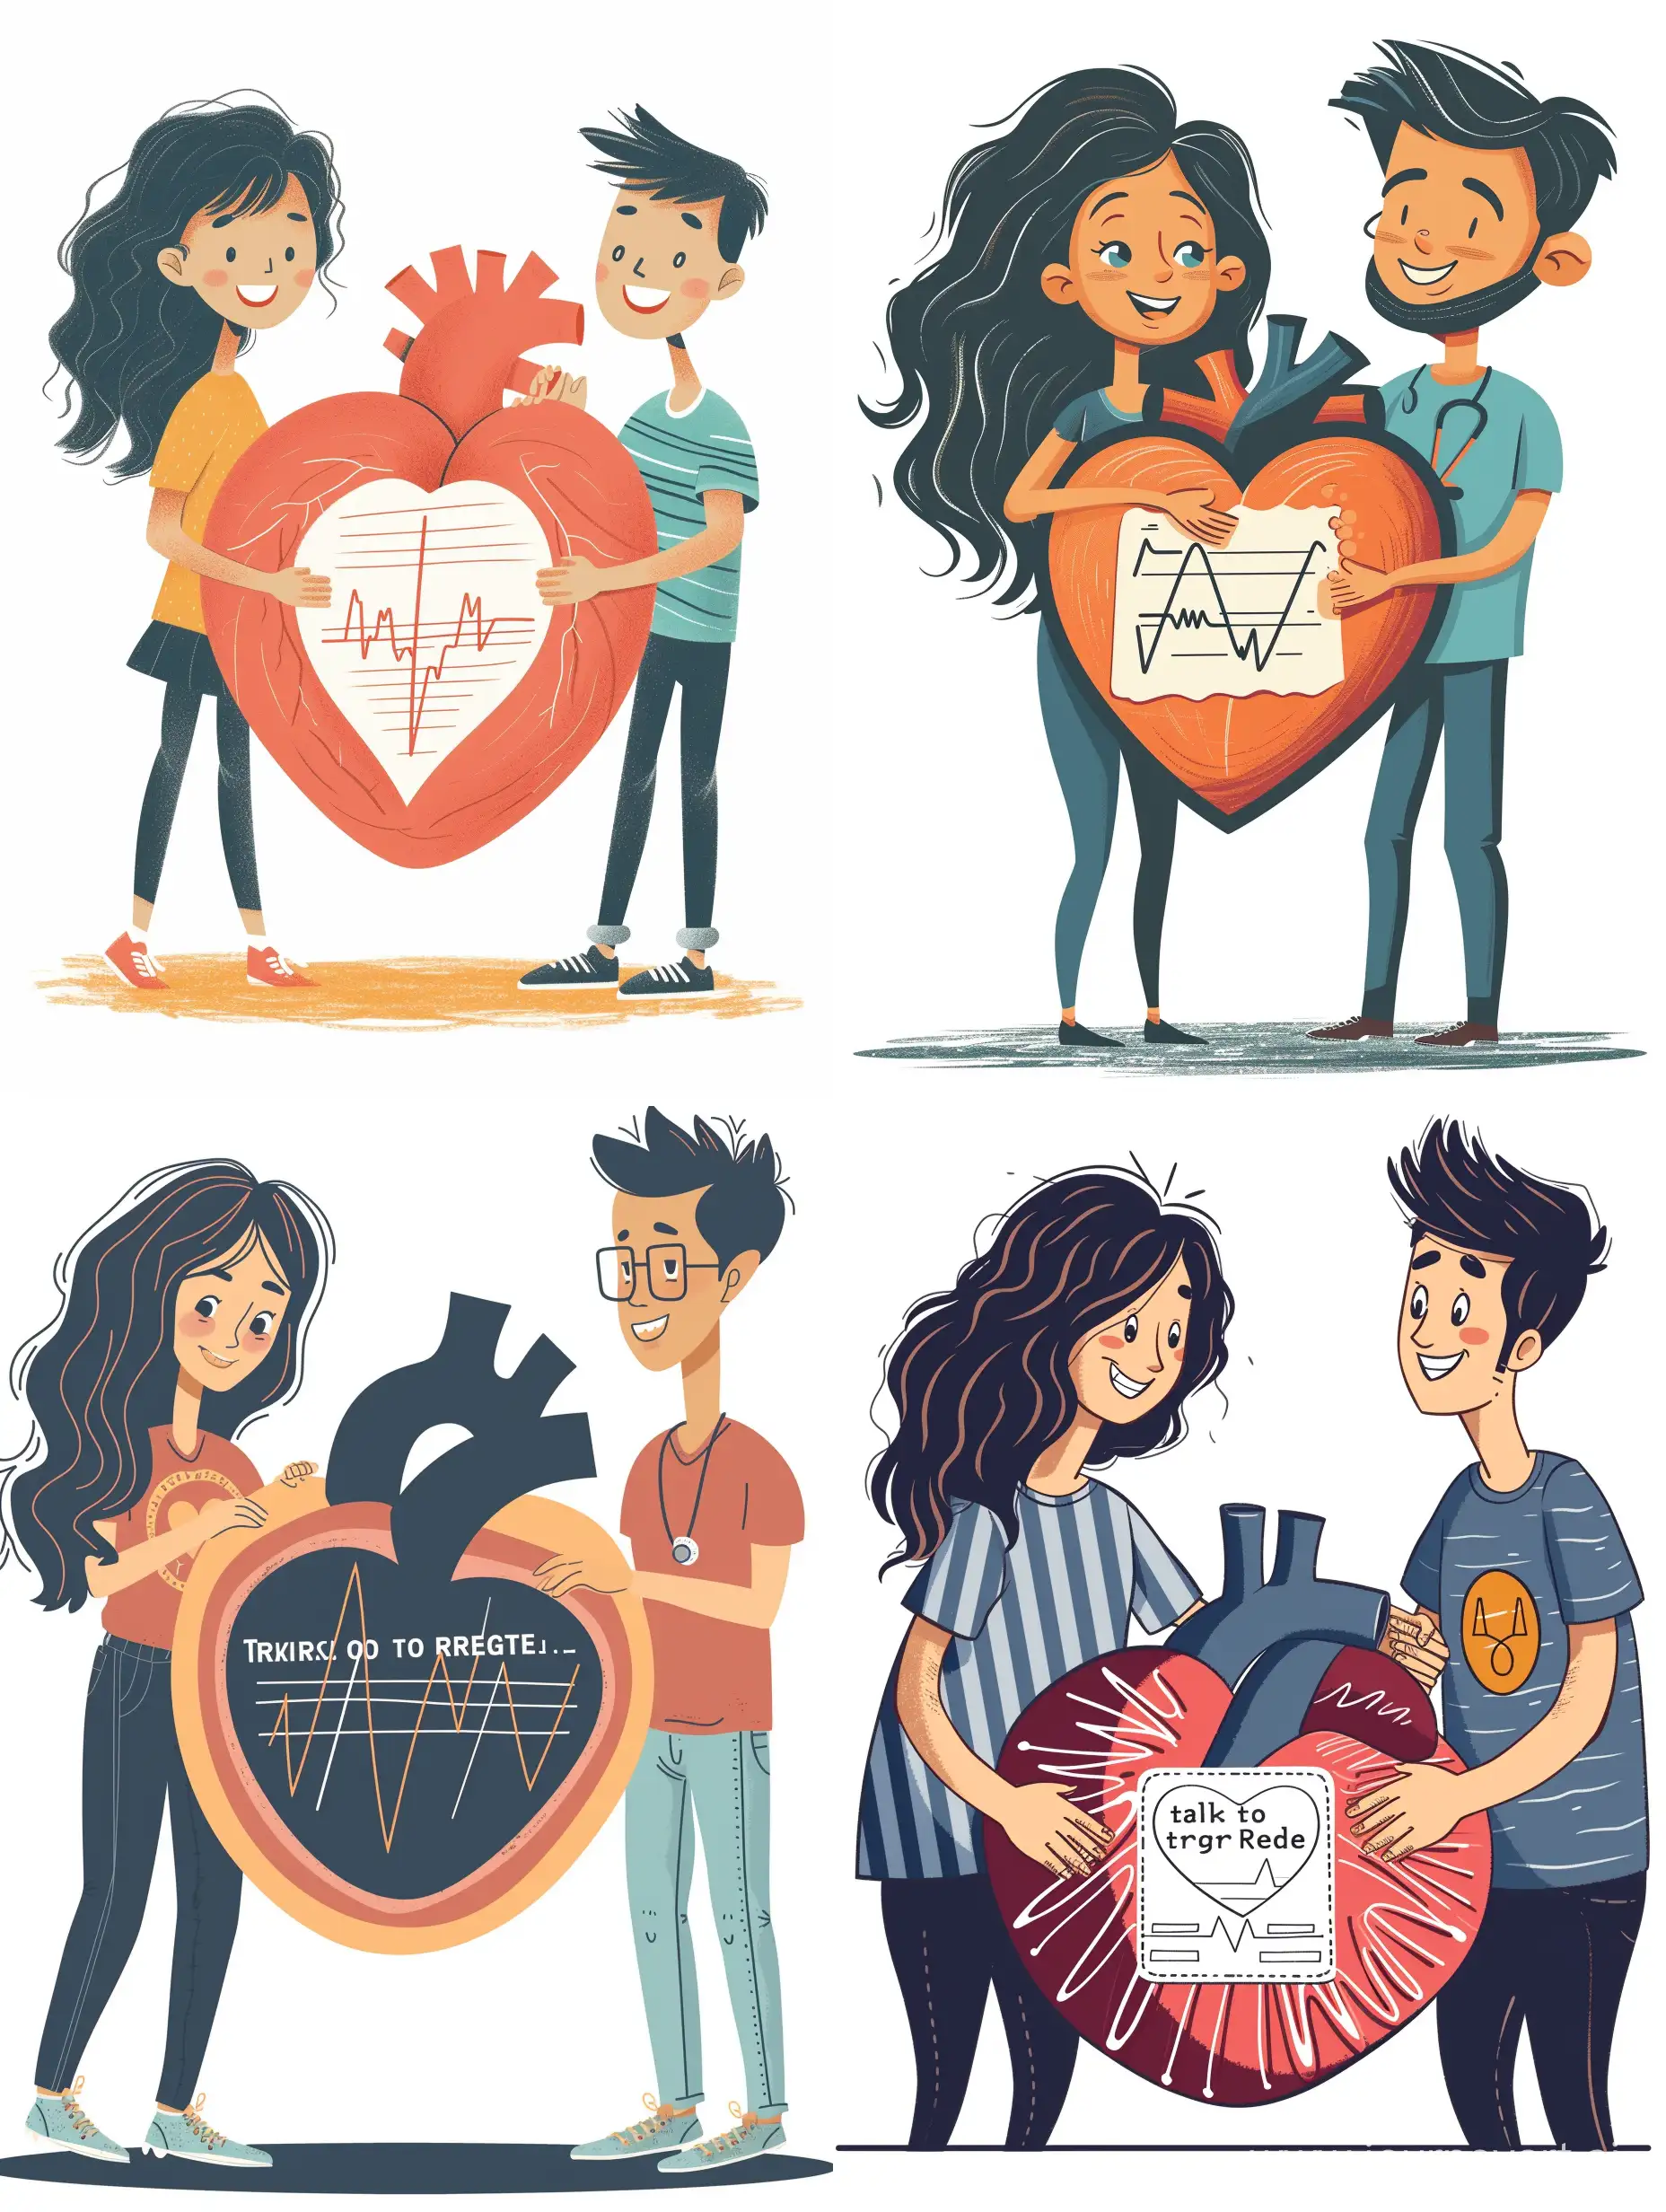 иллюстрация в медицинском стиле, девушка с темными волнистыми волосами благодарит за регистрацию, она вместе с парнем держит в руках большое сердечко, в сердечке изображена кардиограмма